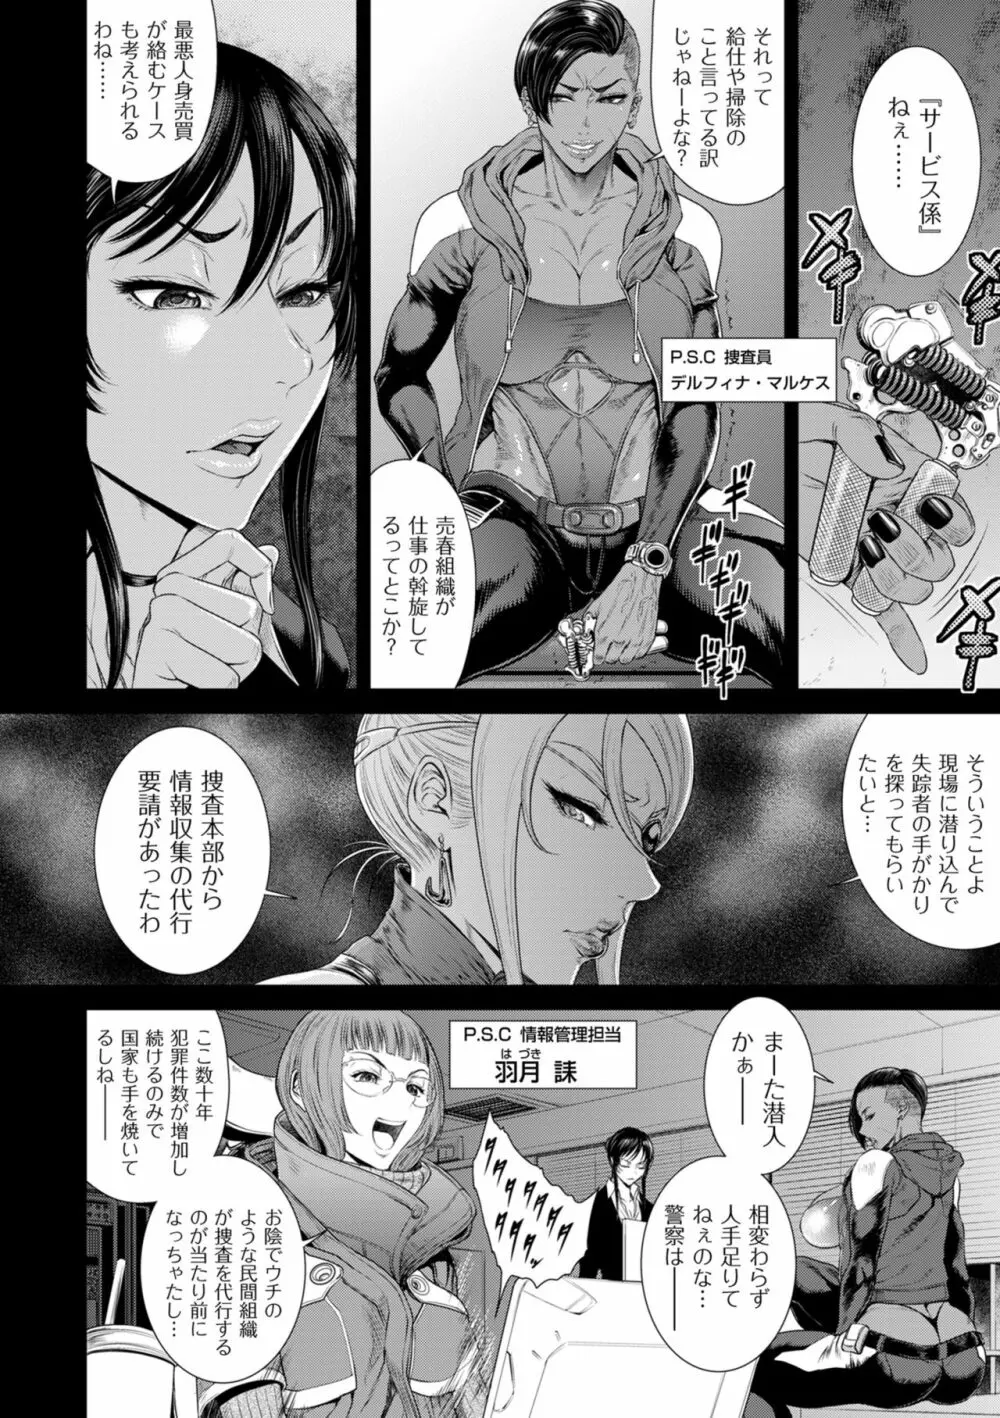 P.S.C潜入捜査官 怜子 1-10 8ページ